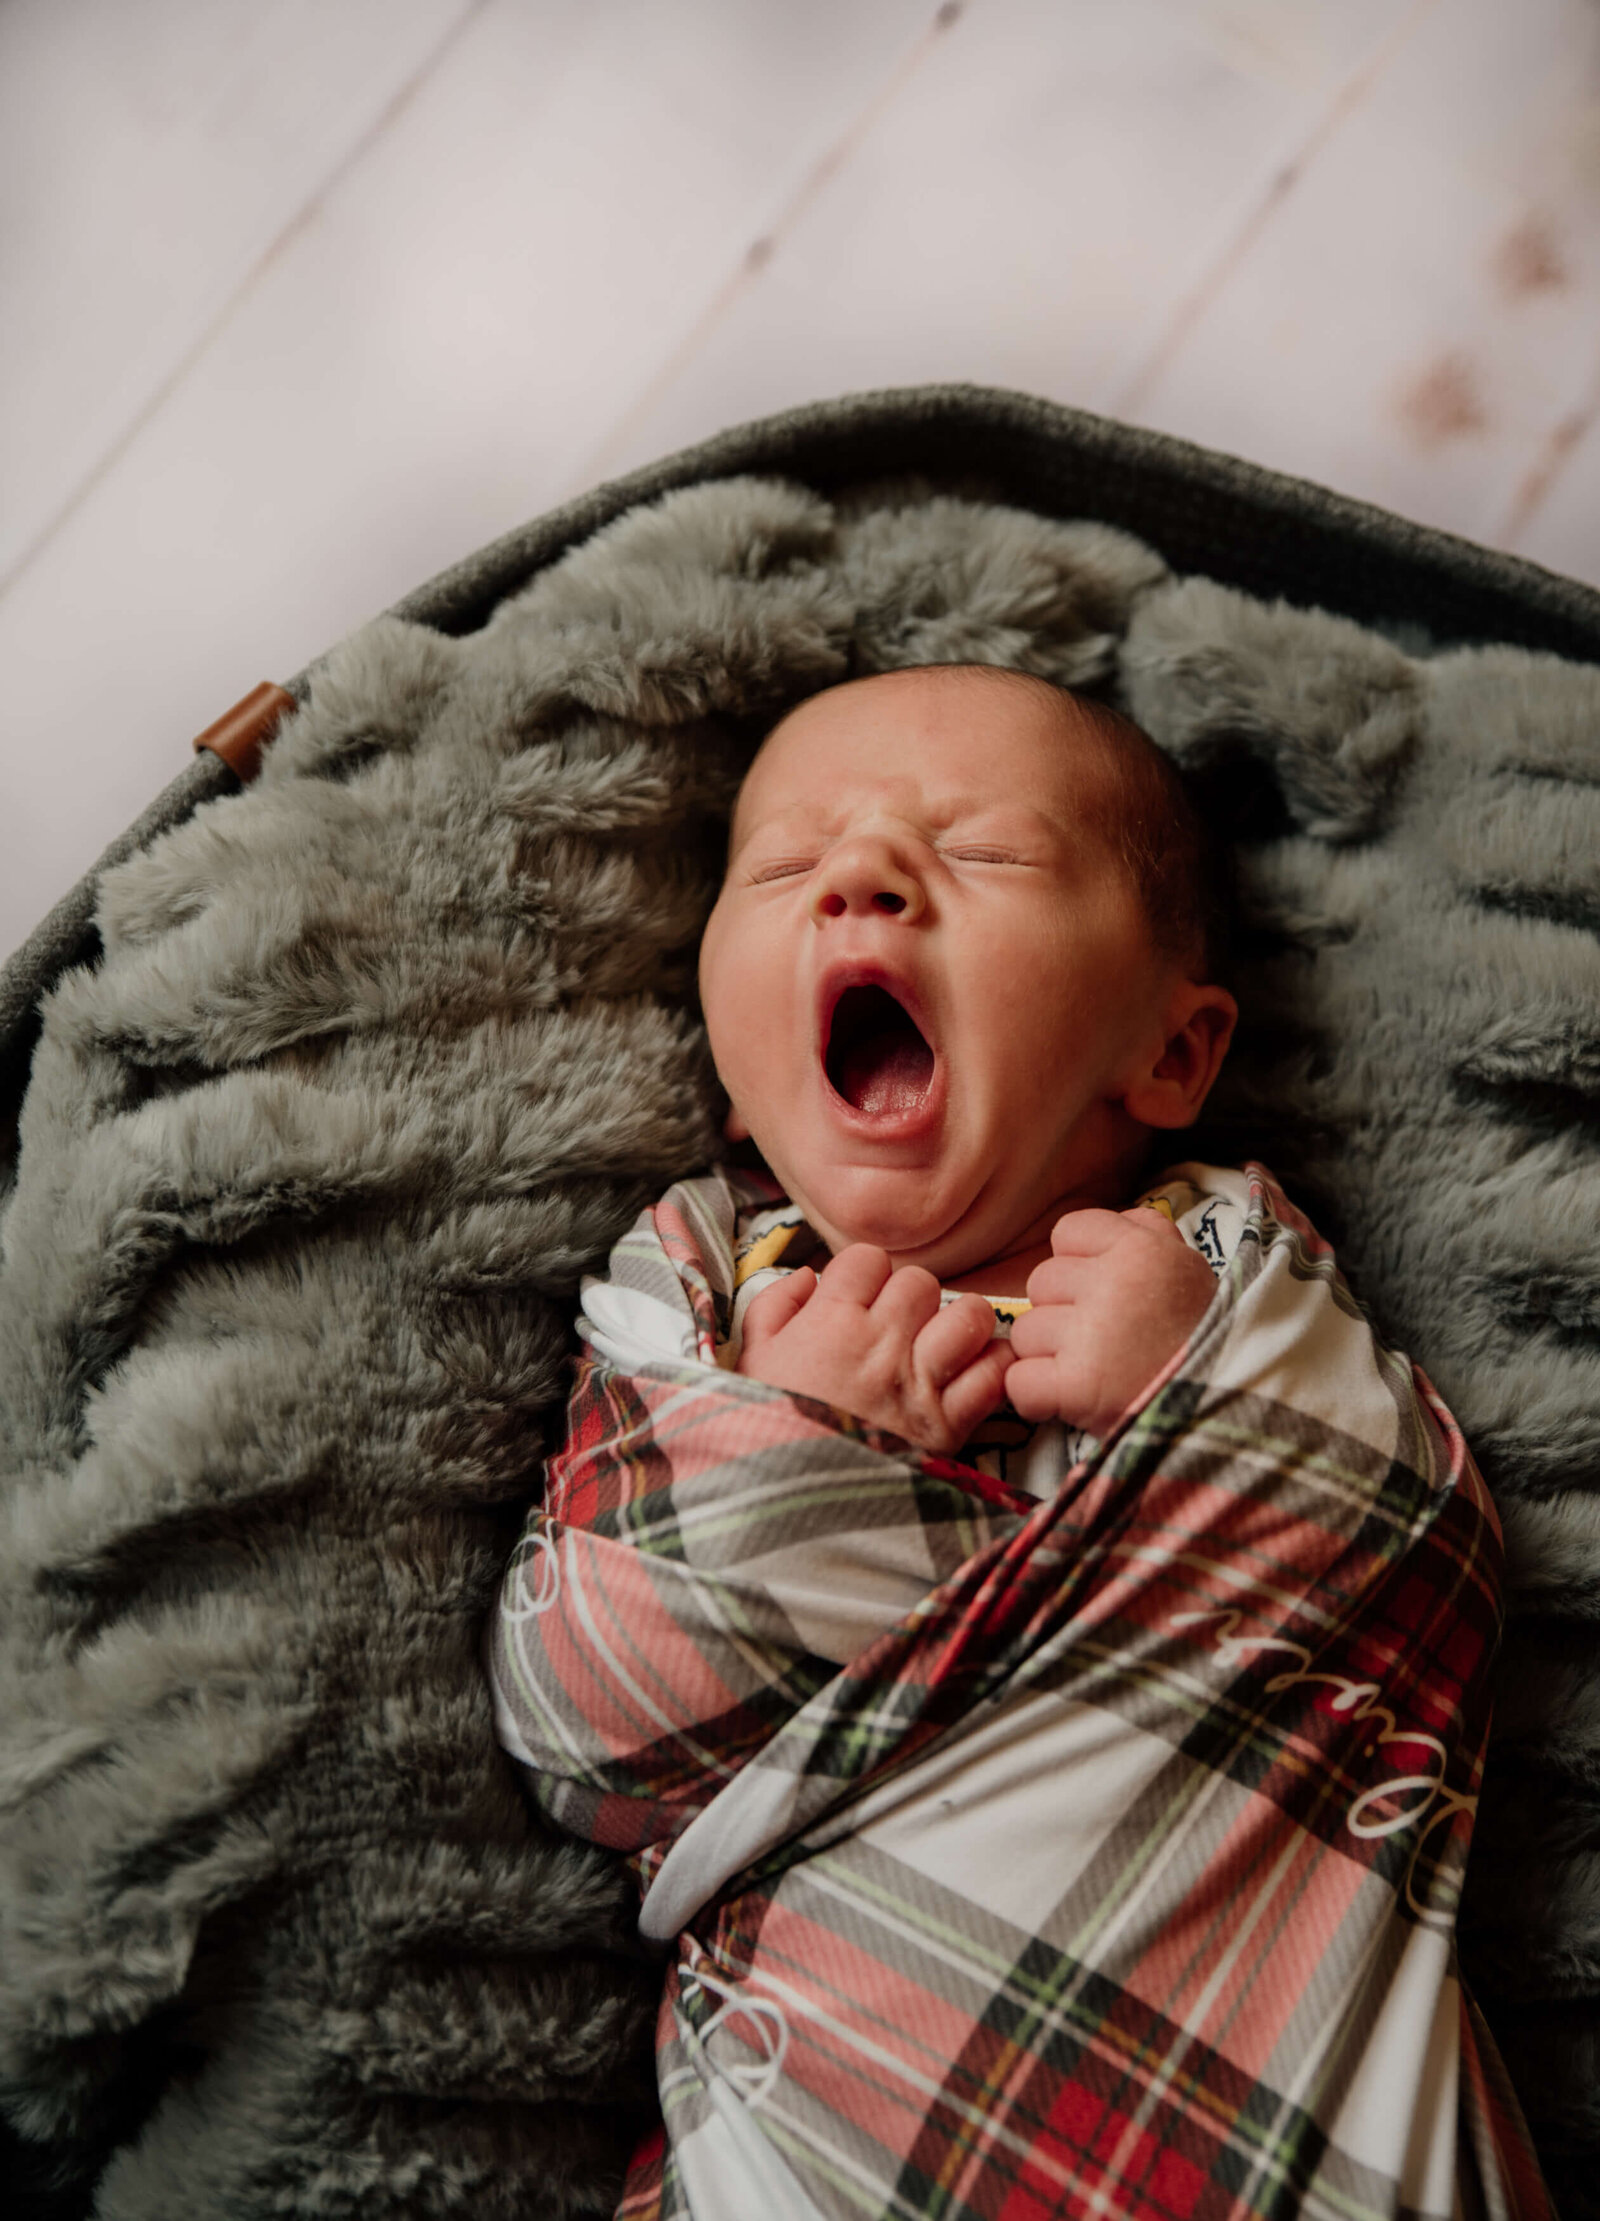 Yawning baby in basket.